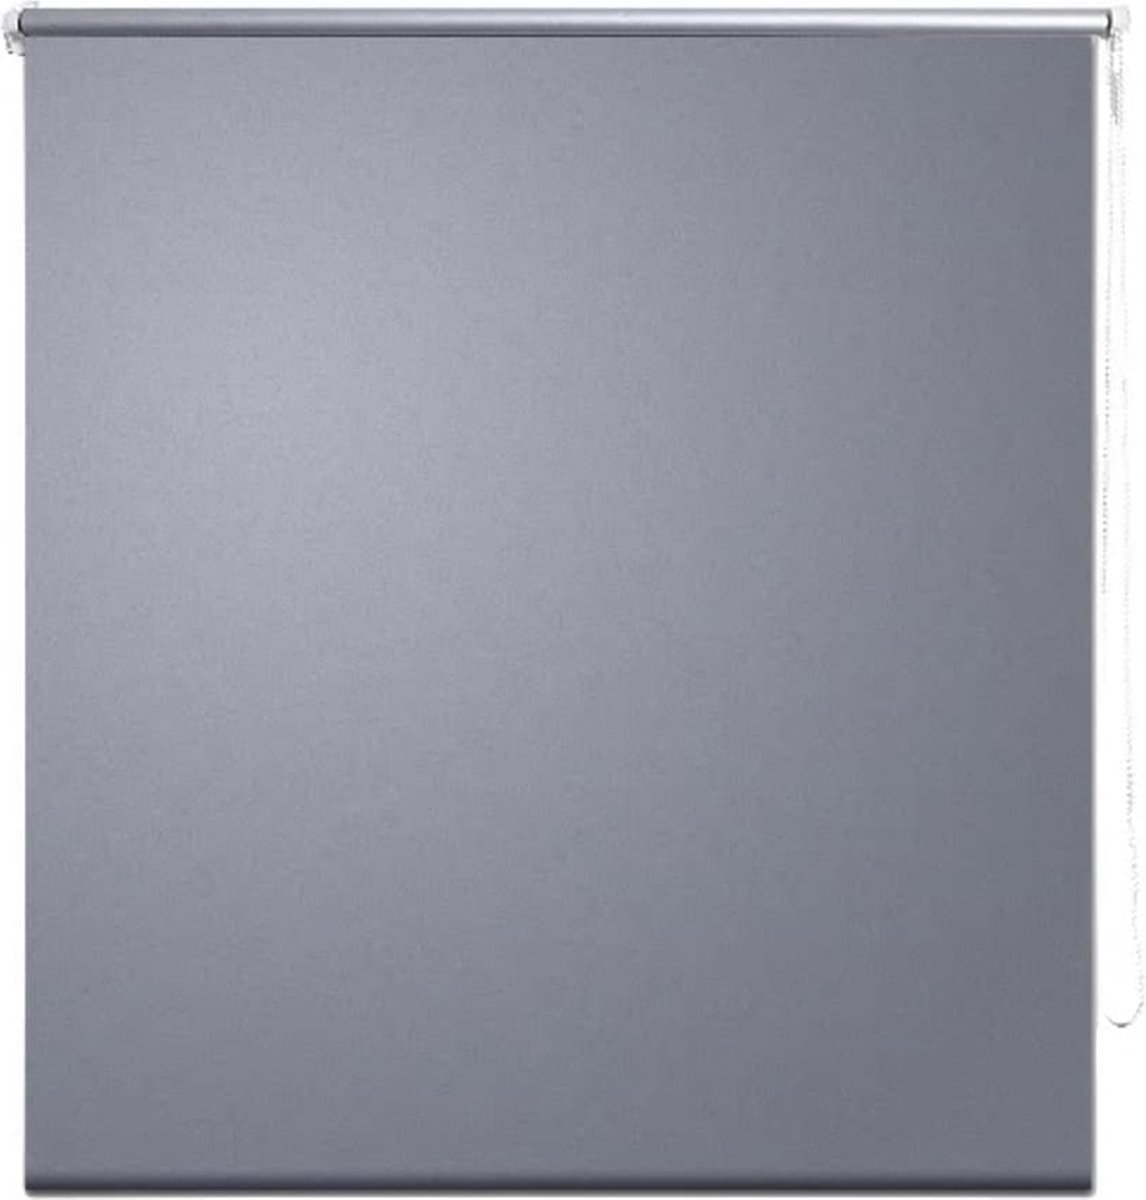 VidaLife Rolgordijn verduisterend grijs 100 x 175 cm